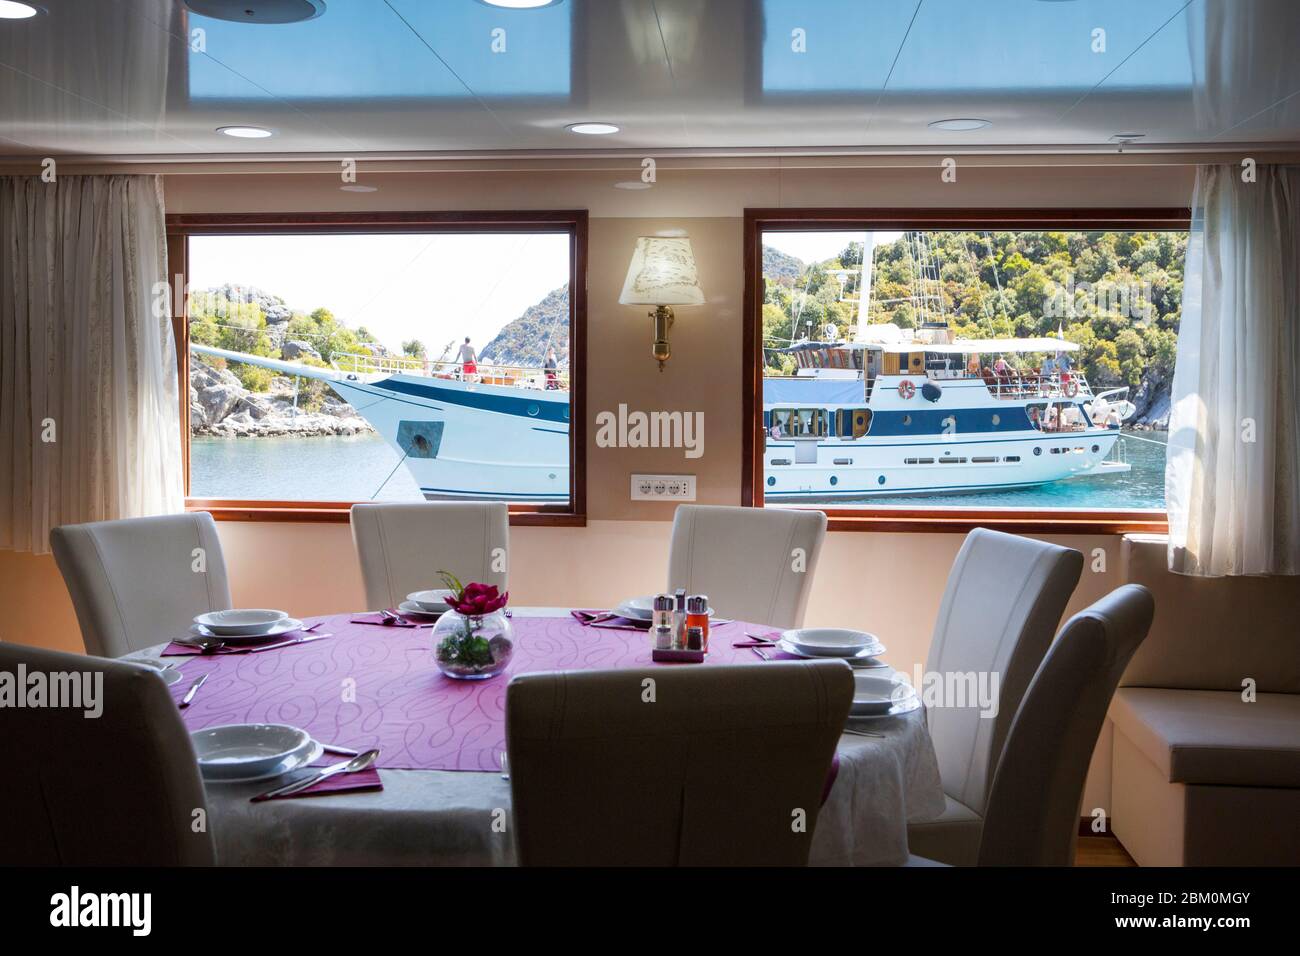 Innen eines Restaurants Tisch mit Blick auf ein Touristenschiff durch das Fenster Stockfoto